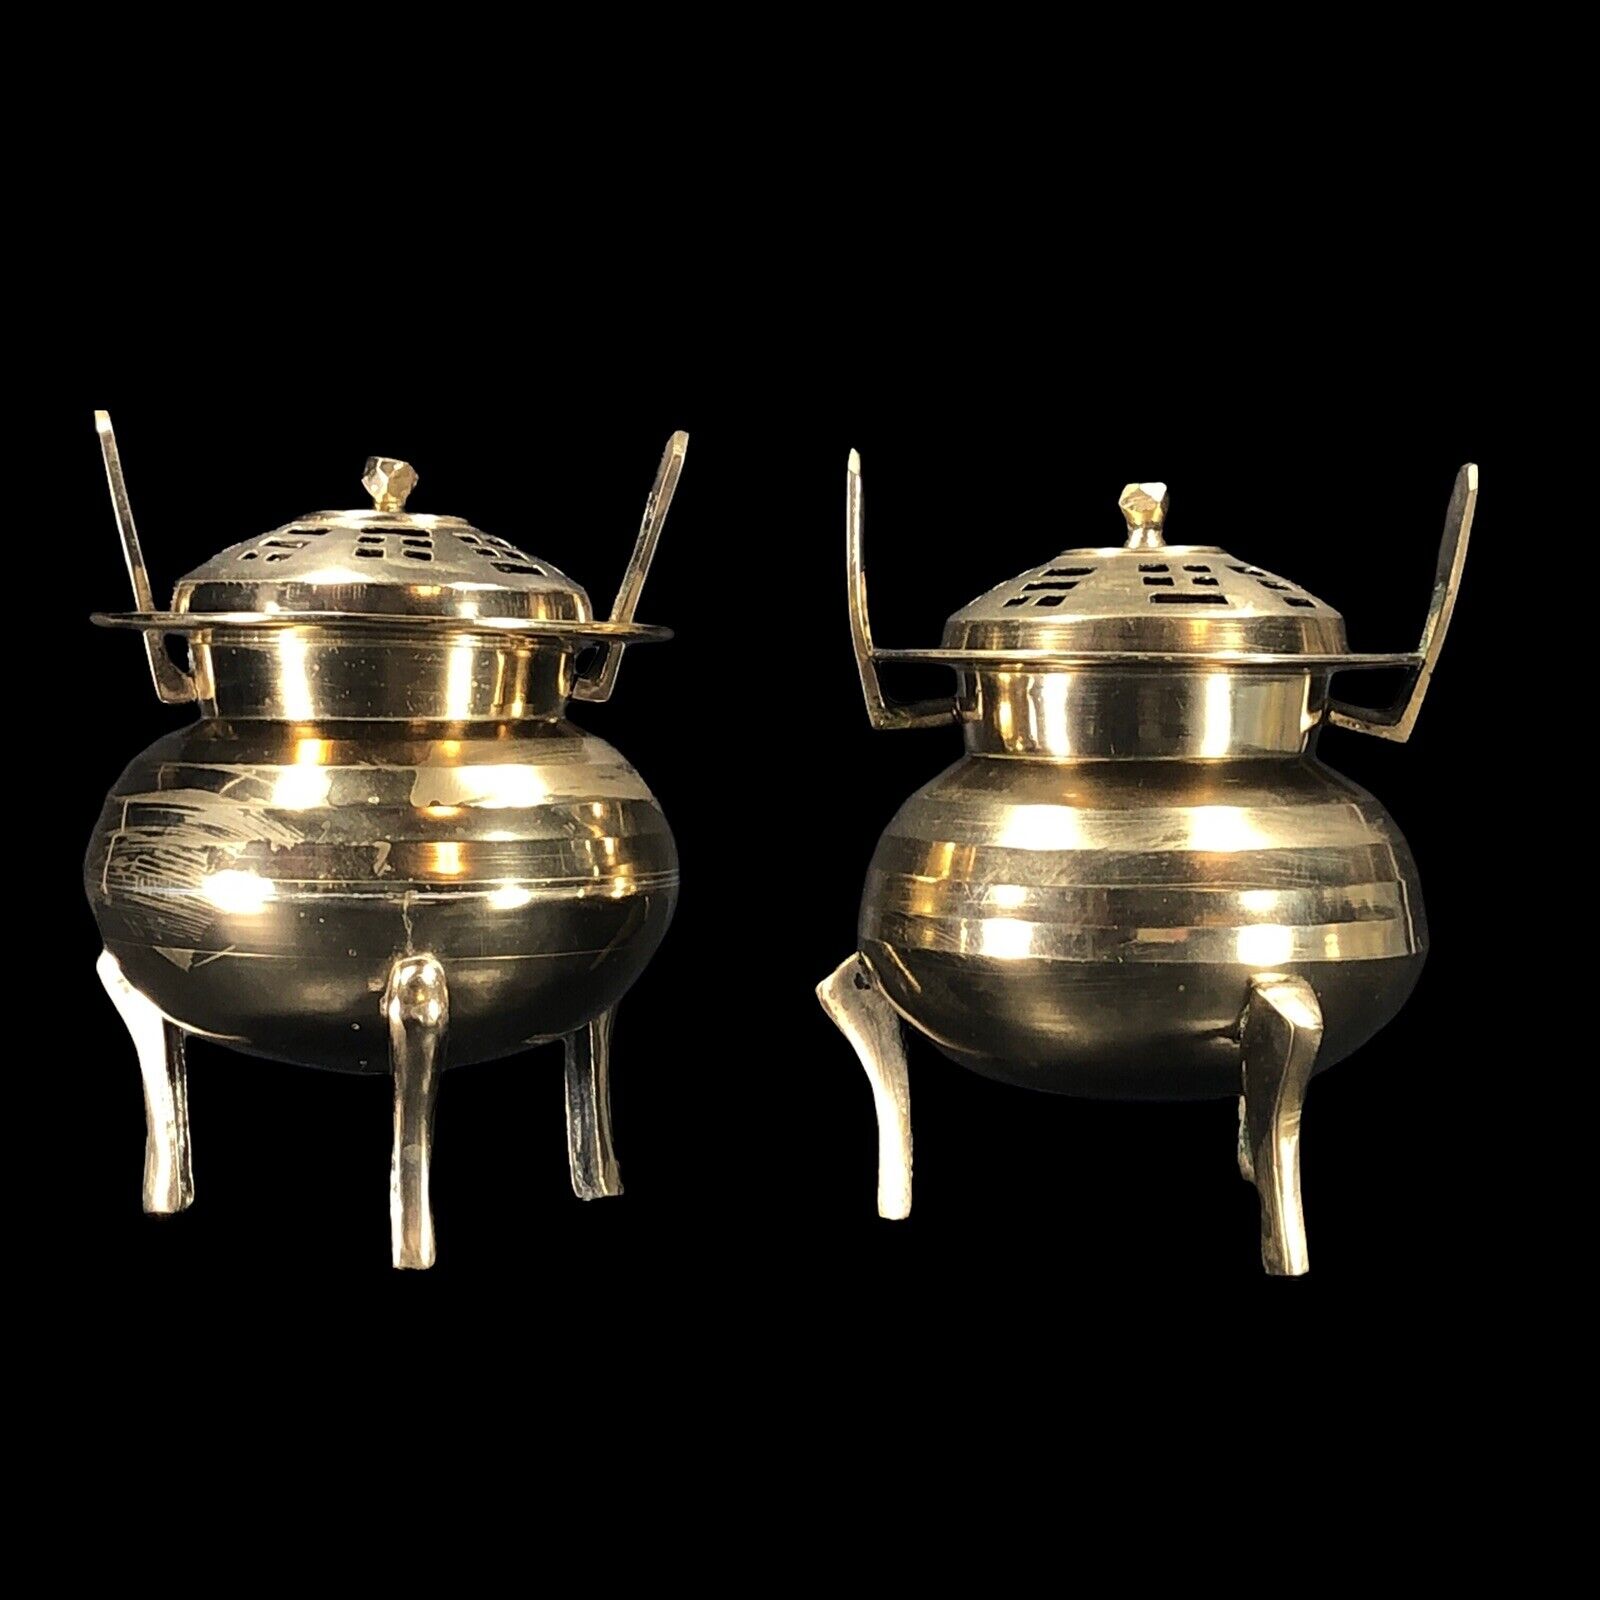 2ct Vintage Brass Chinese Censer Incense Burner Round w/ Lid Footed 5-in High Без бренда - фотография #2